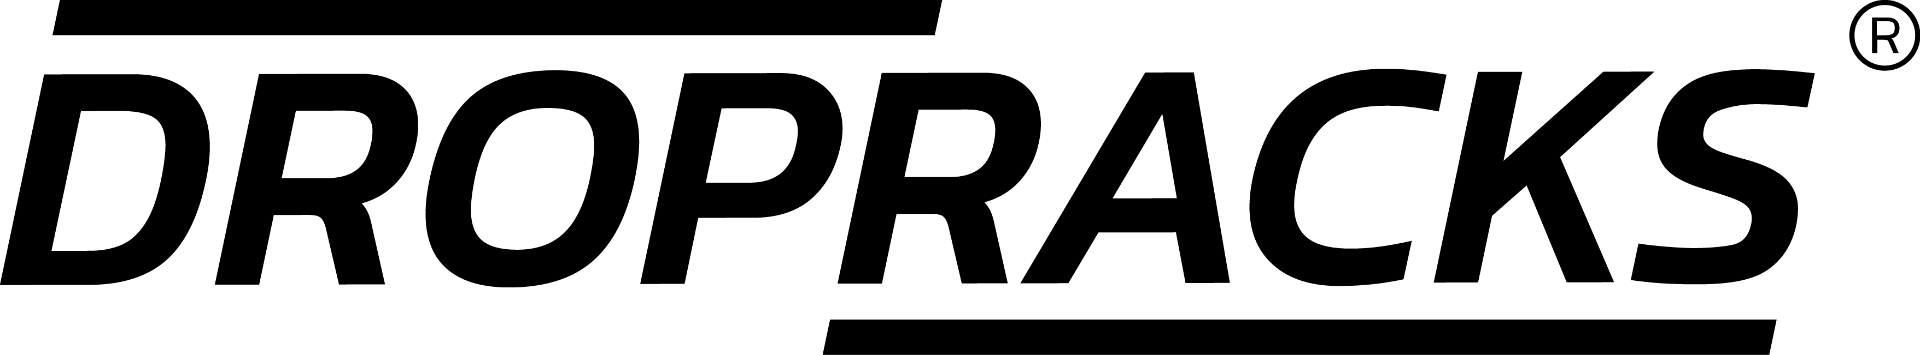 Dropracks Logo